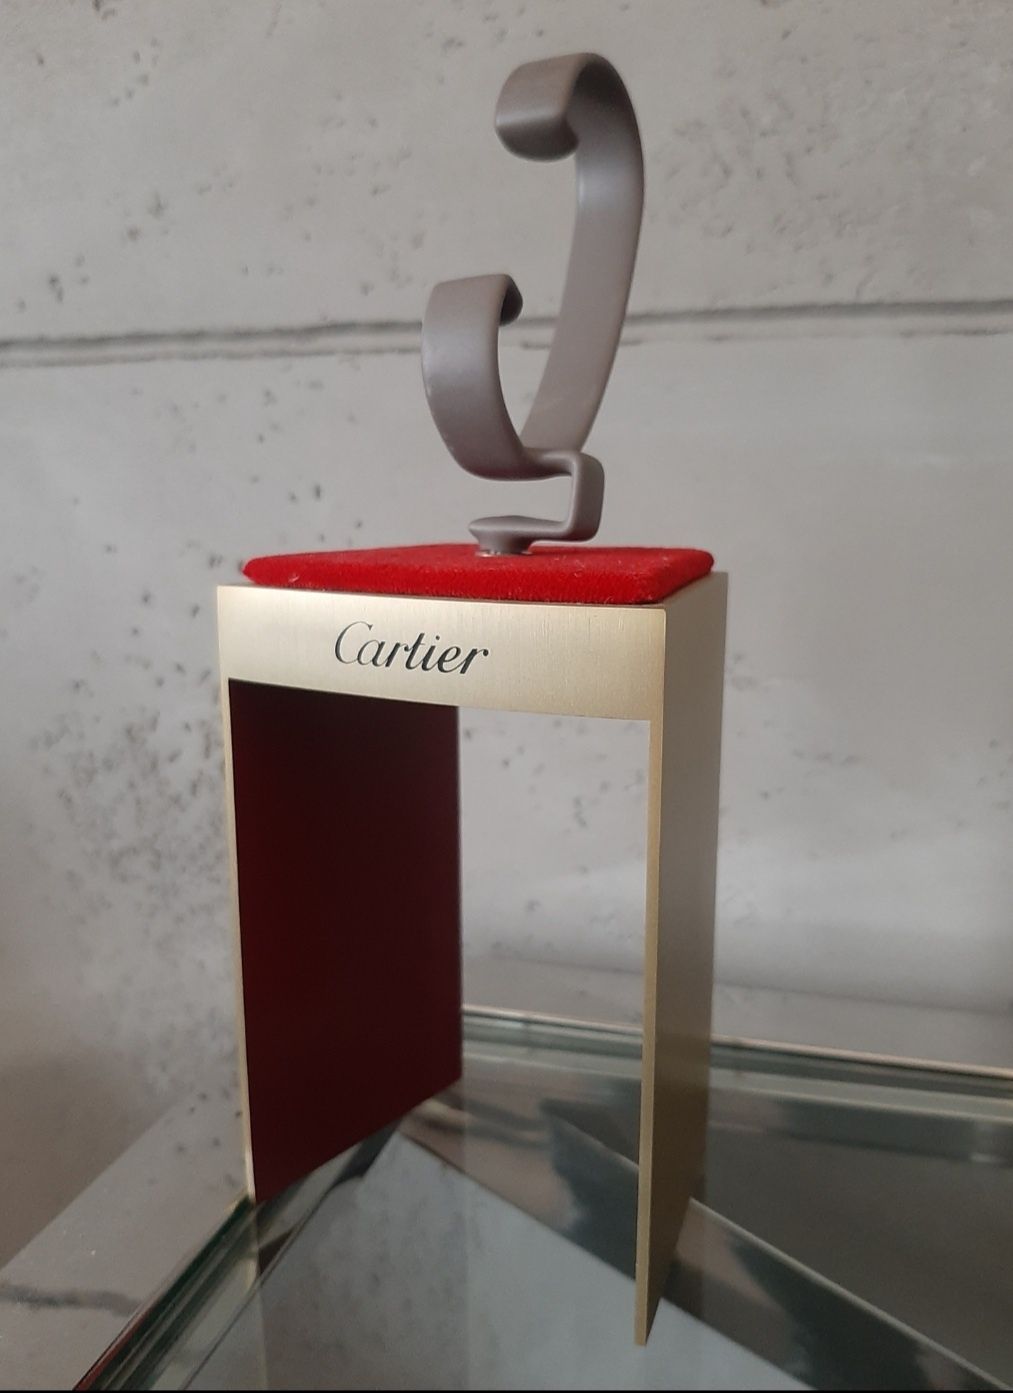 Cartier oryginalny  stojak na zegarek